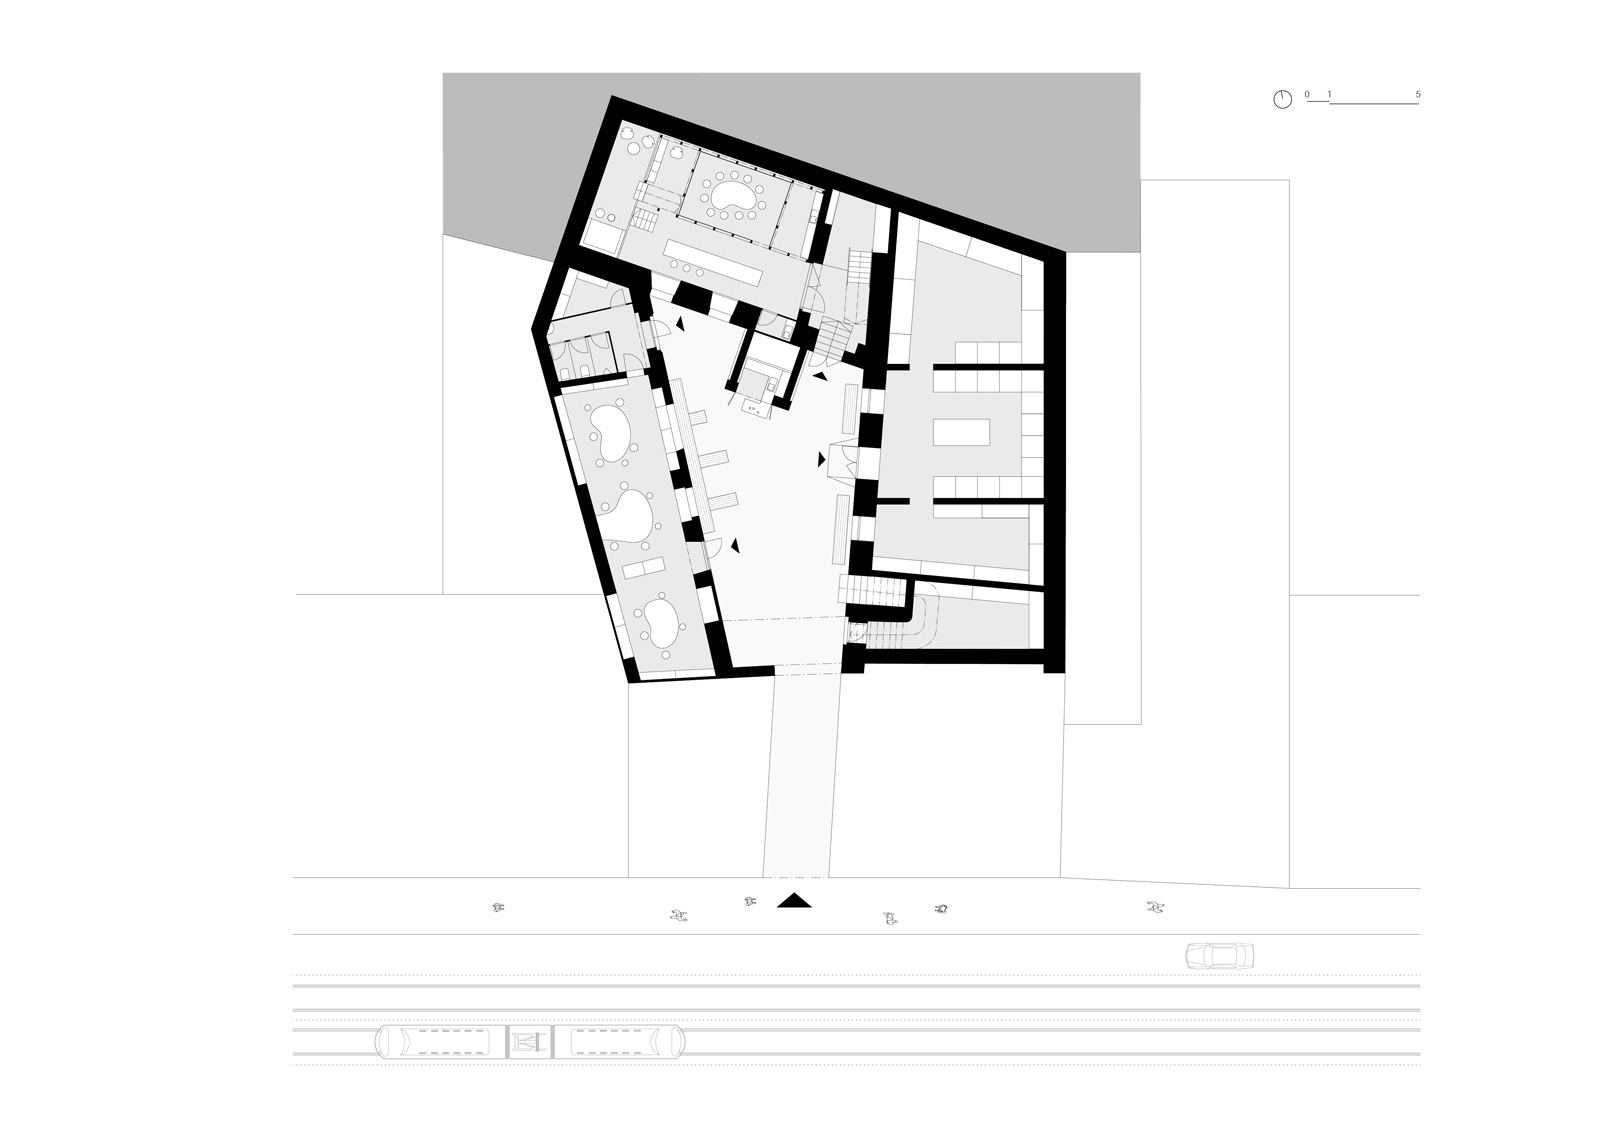 Ground level floorplan